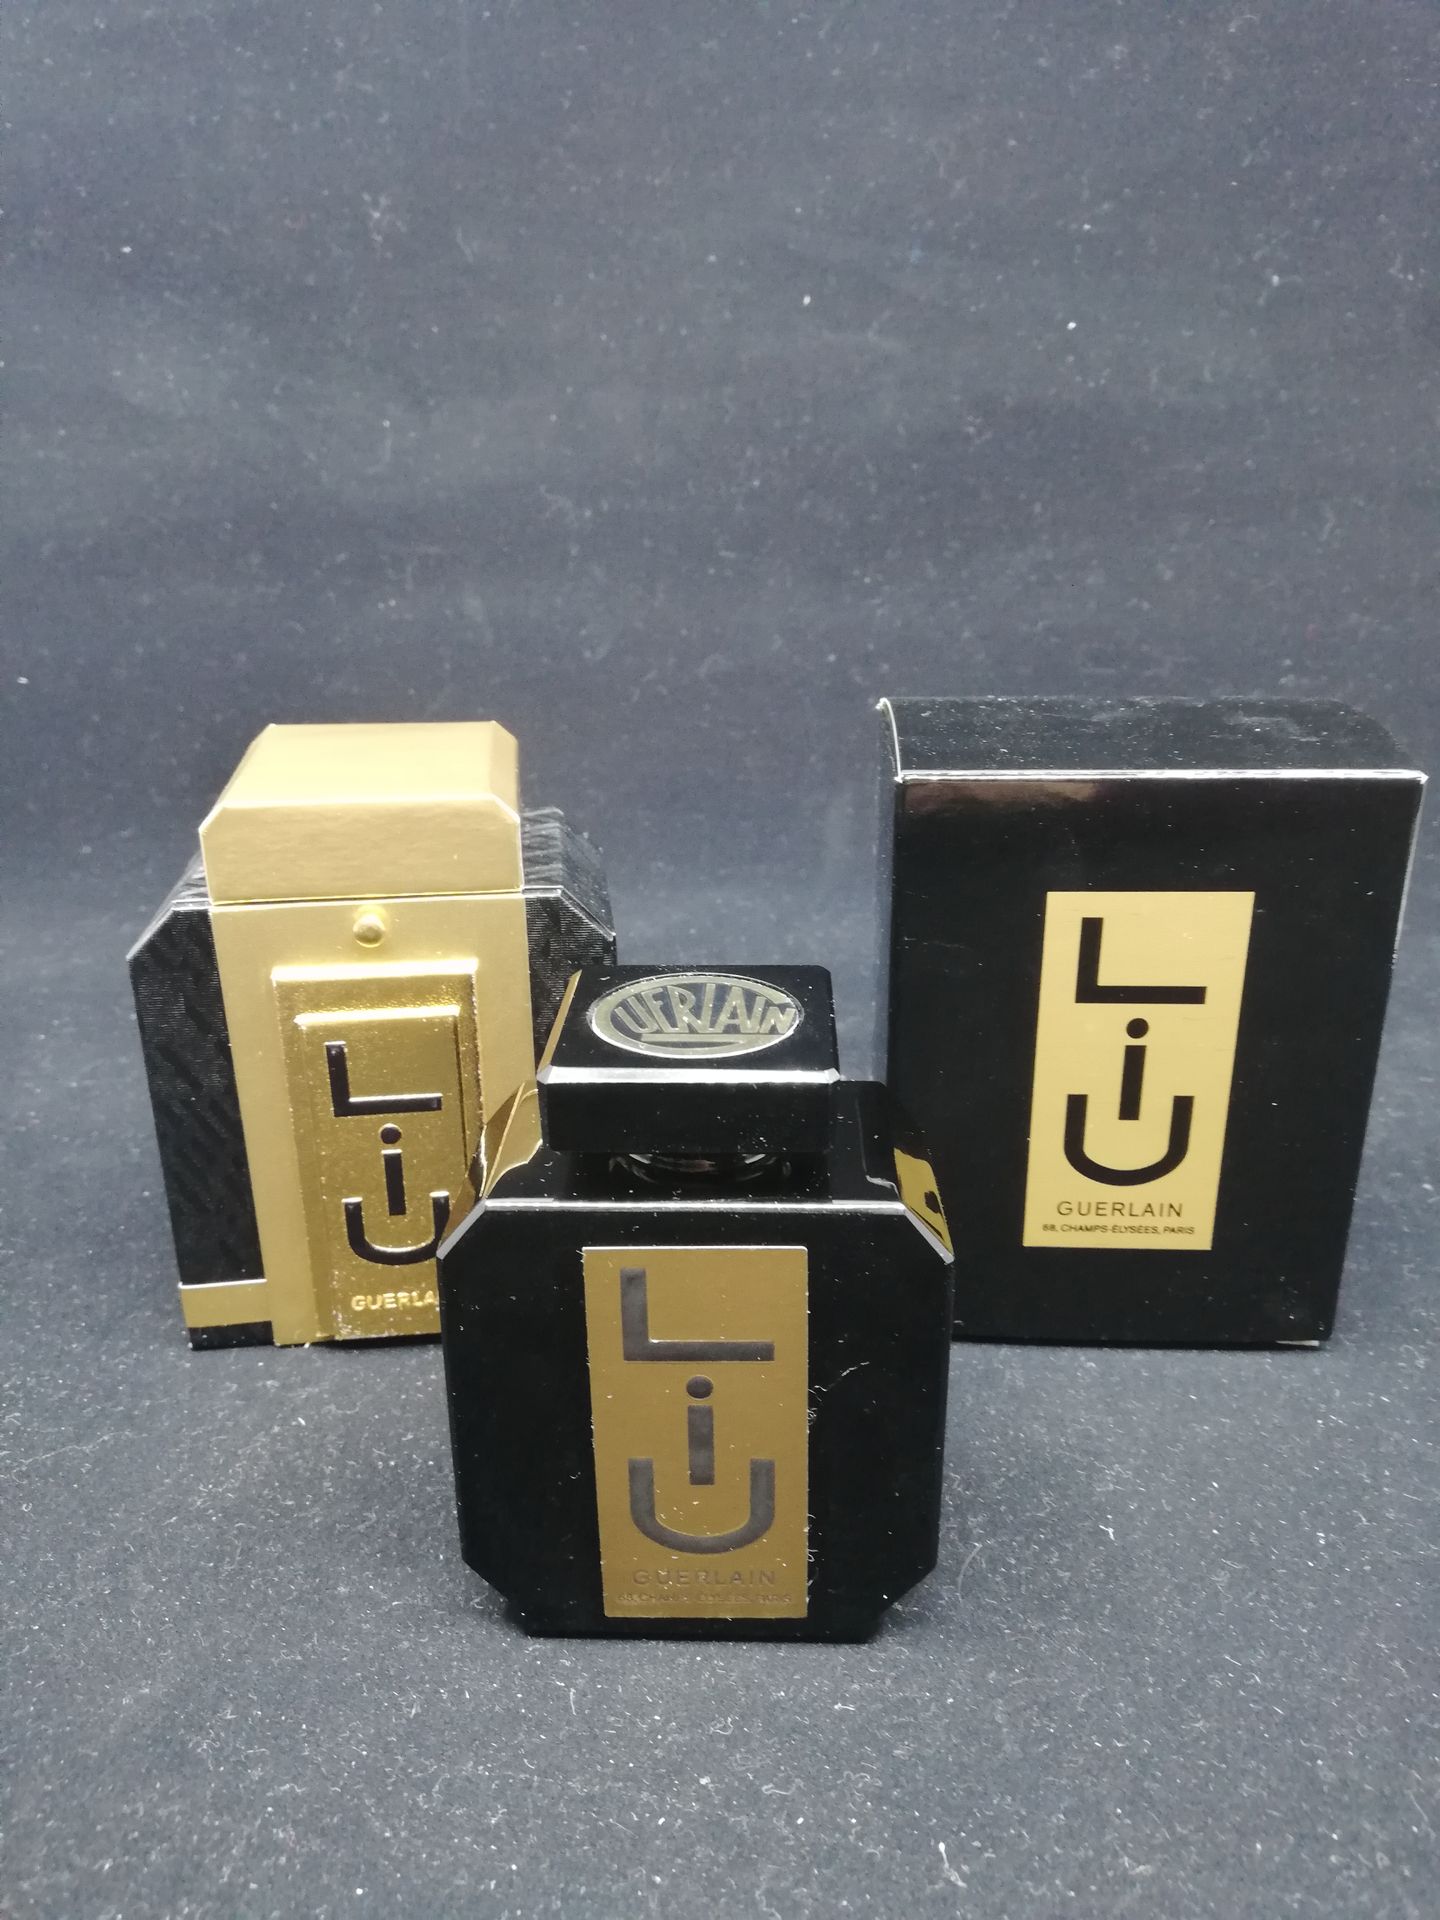 Null Guerlain - "Liu" - (1928)

Presentado en su caja de lujo de cartón dorado y&hellip;